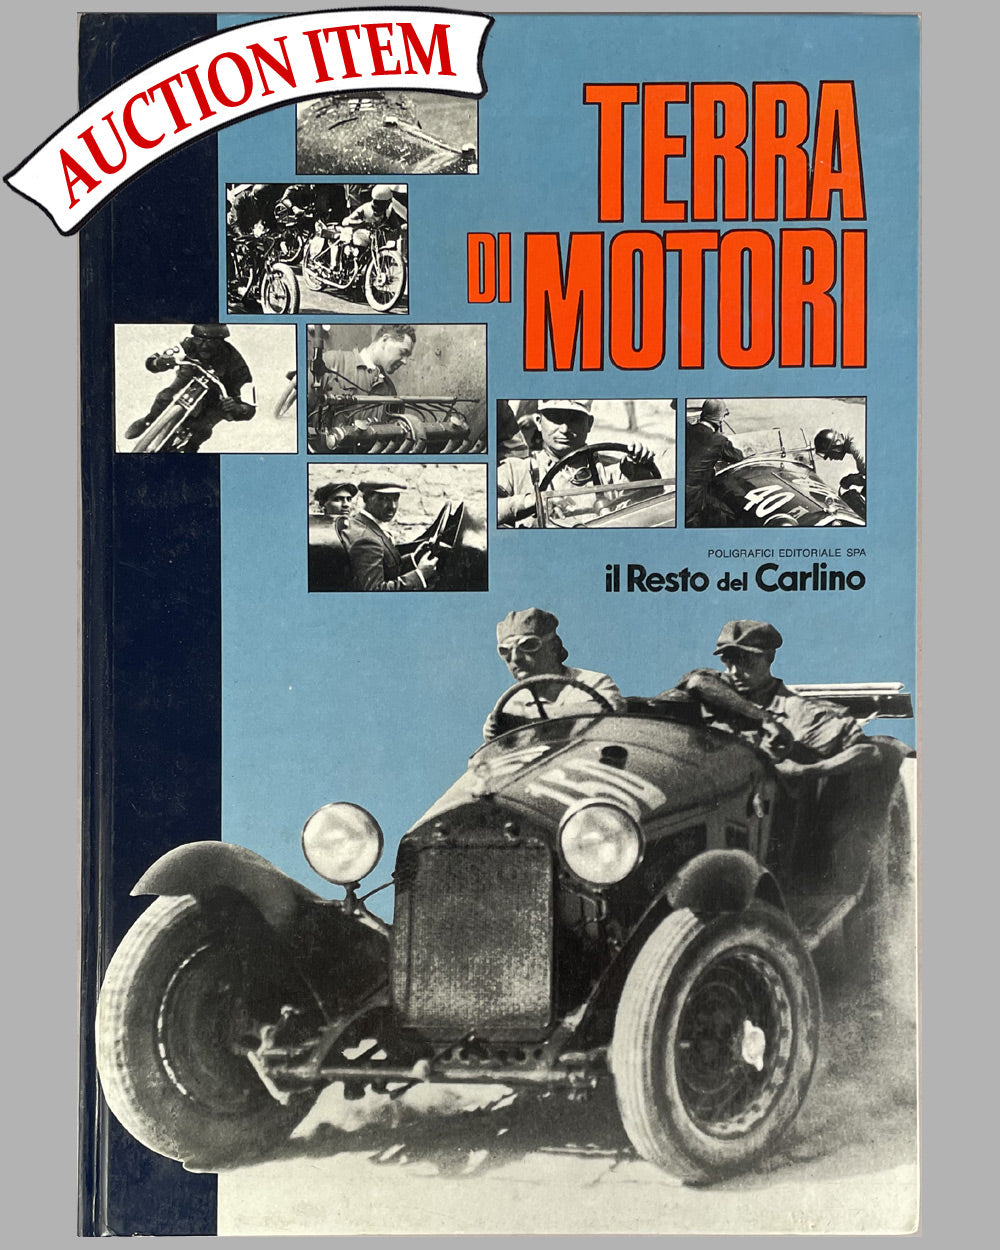 2 - Terra di Motori 1st edition book by Leo Turrini, 1983